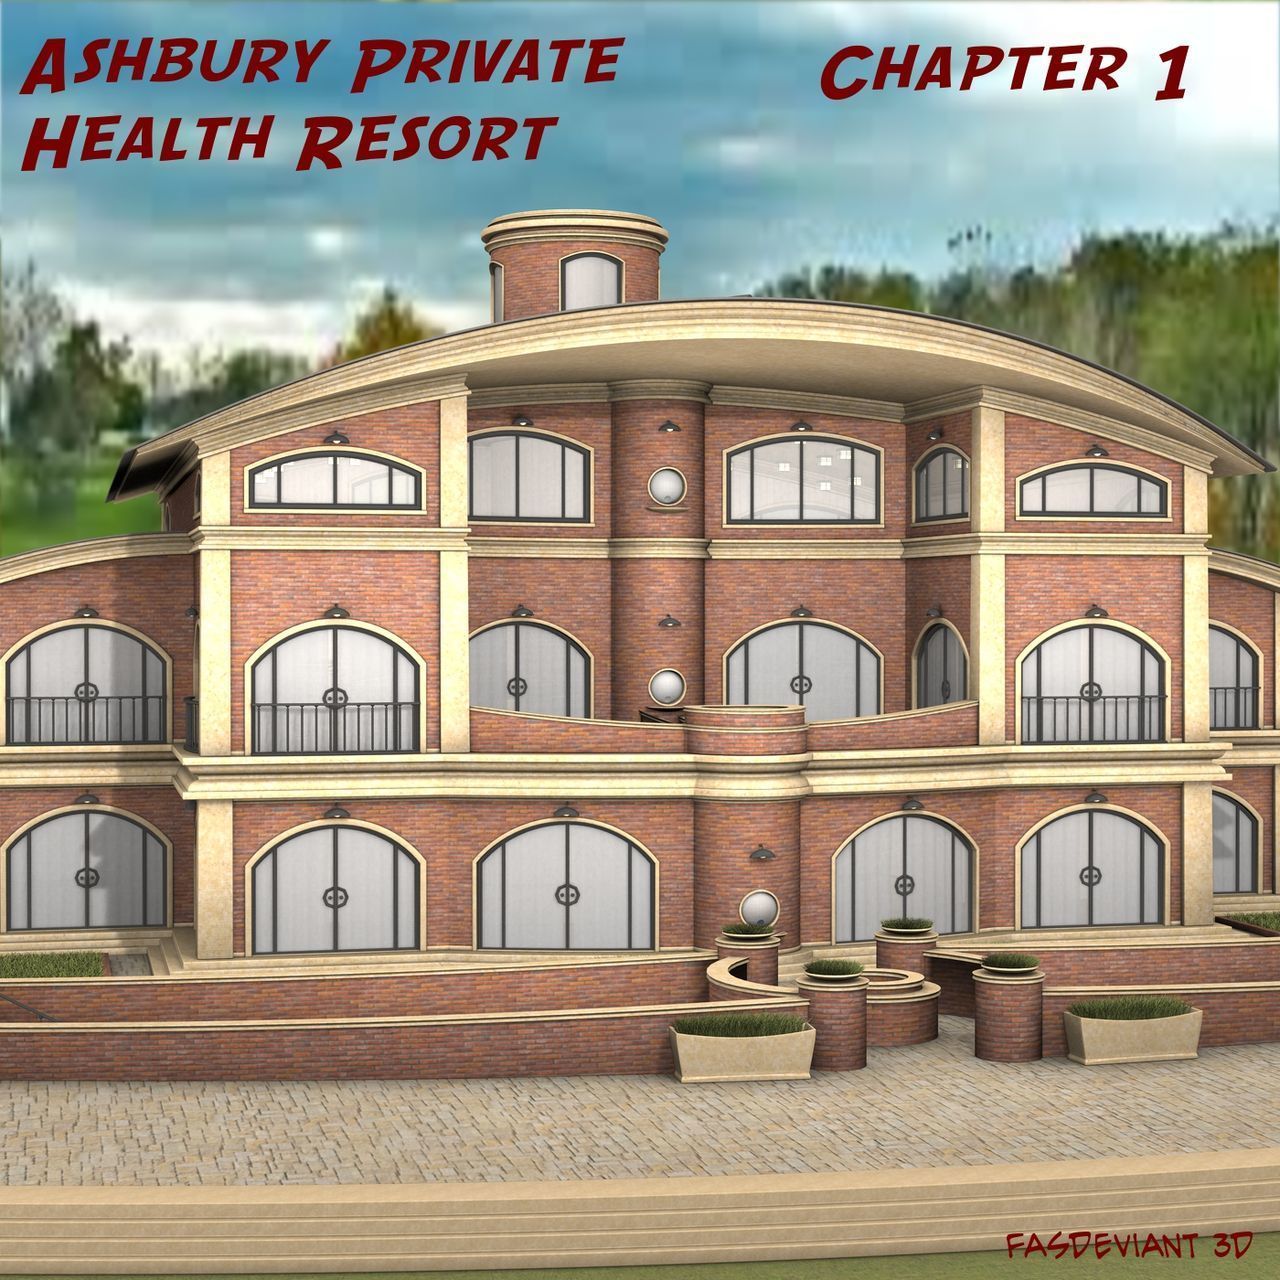 [fasdeviant] ashbury Privé de la santé Resort chapitre 1